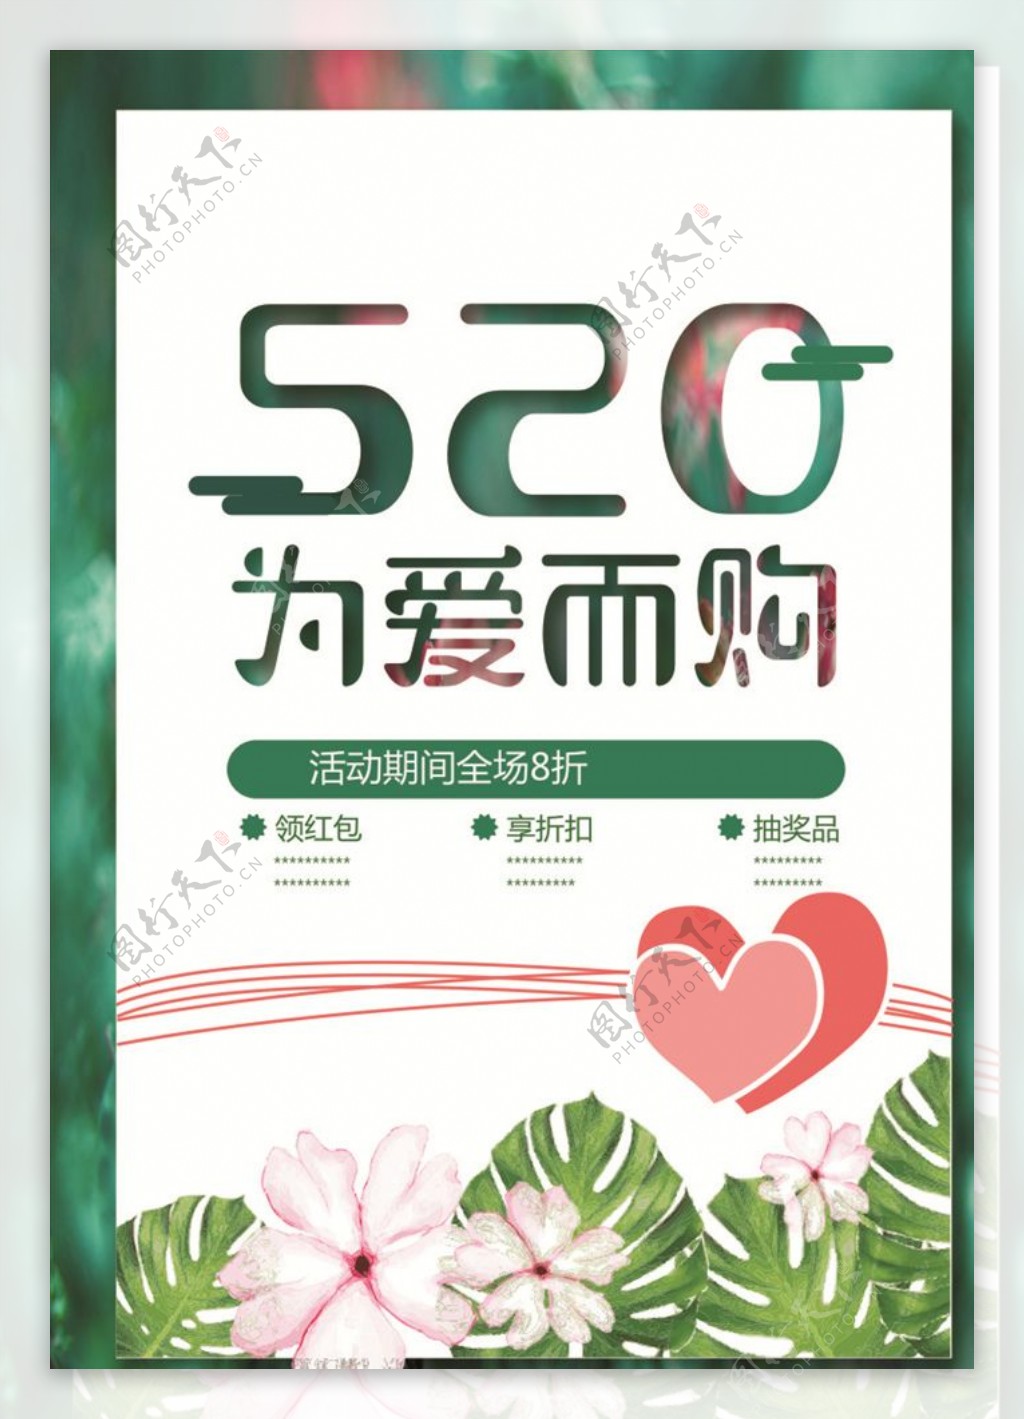 520清新节日促销海报